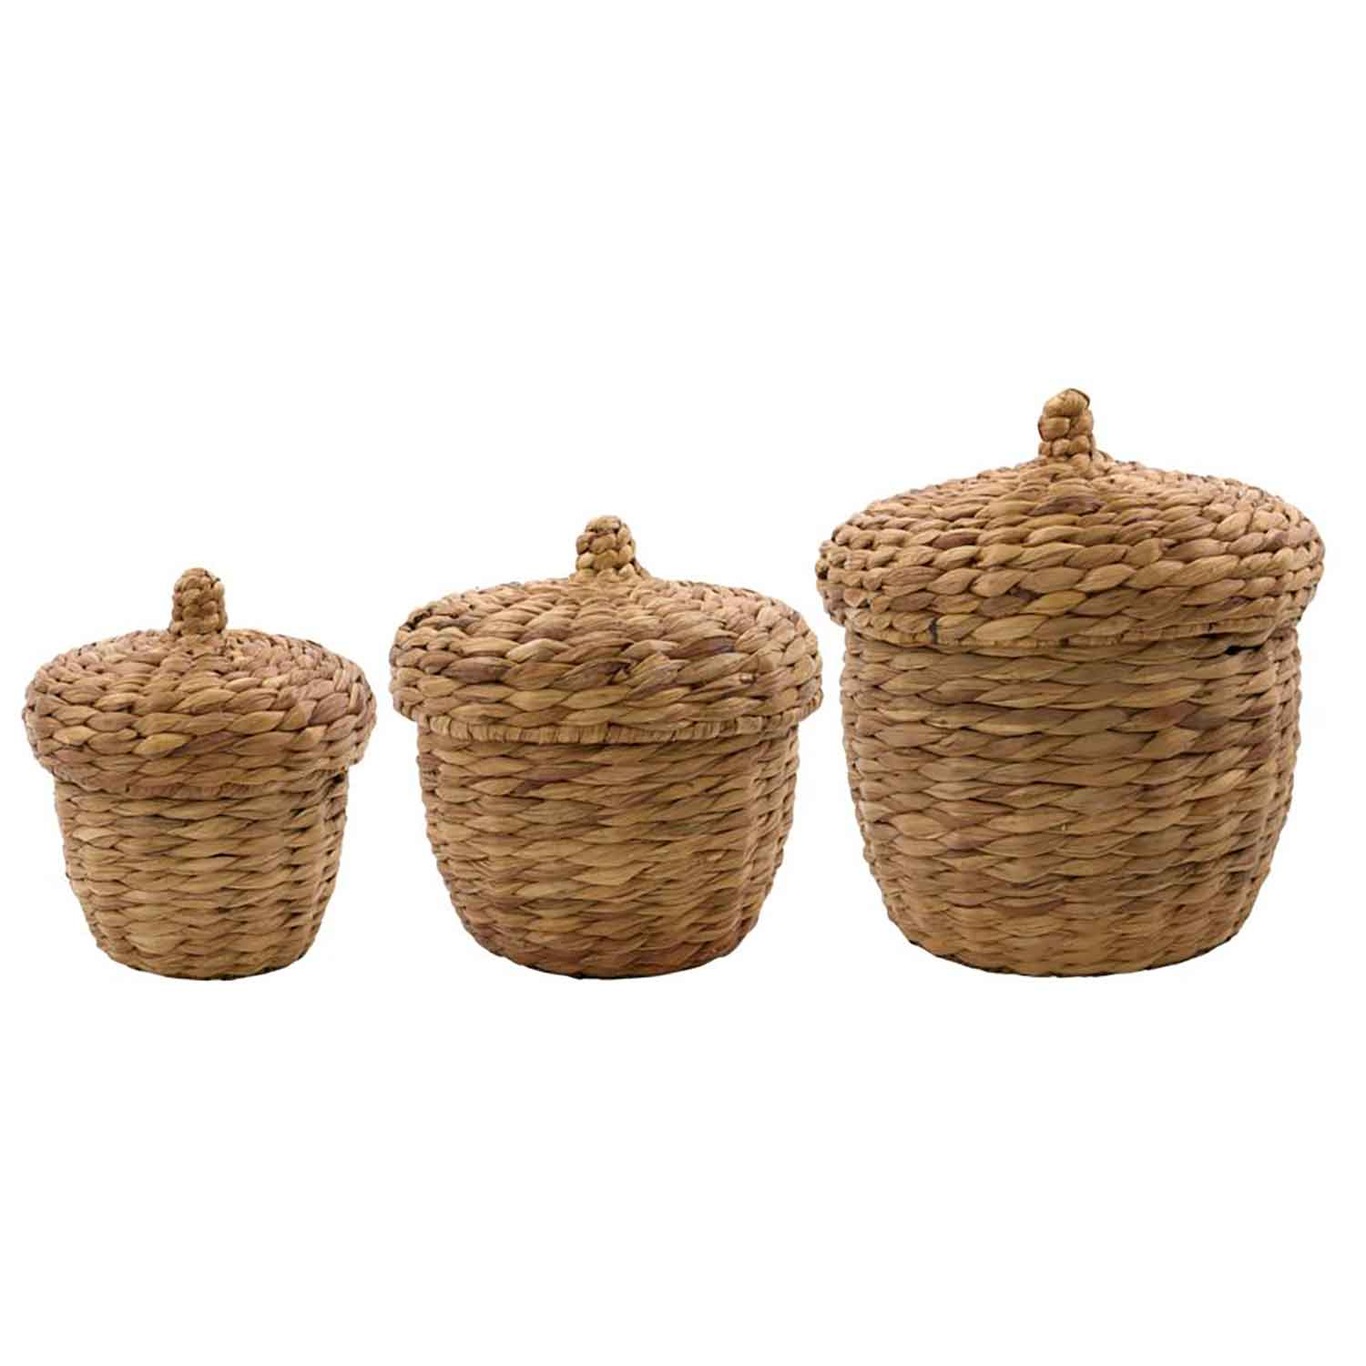 Aske Baskets, 3-pack